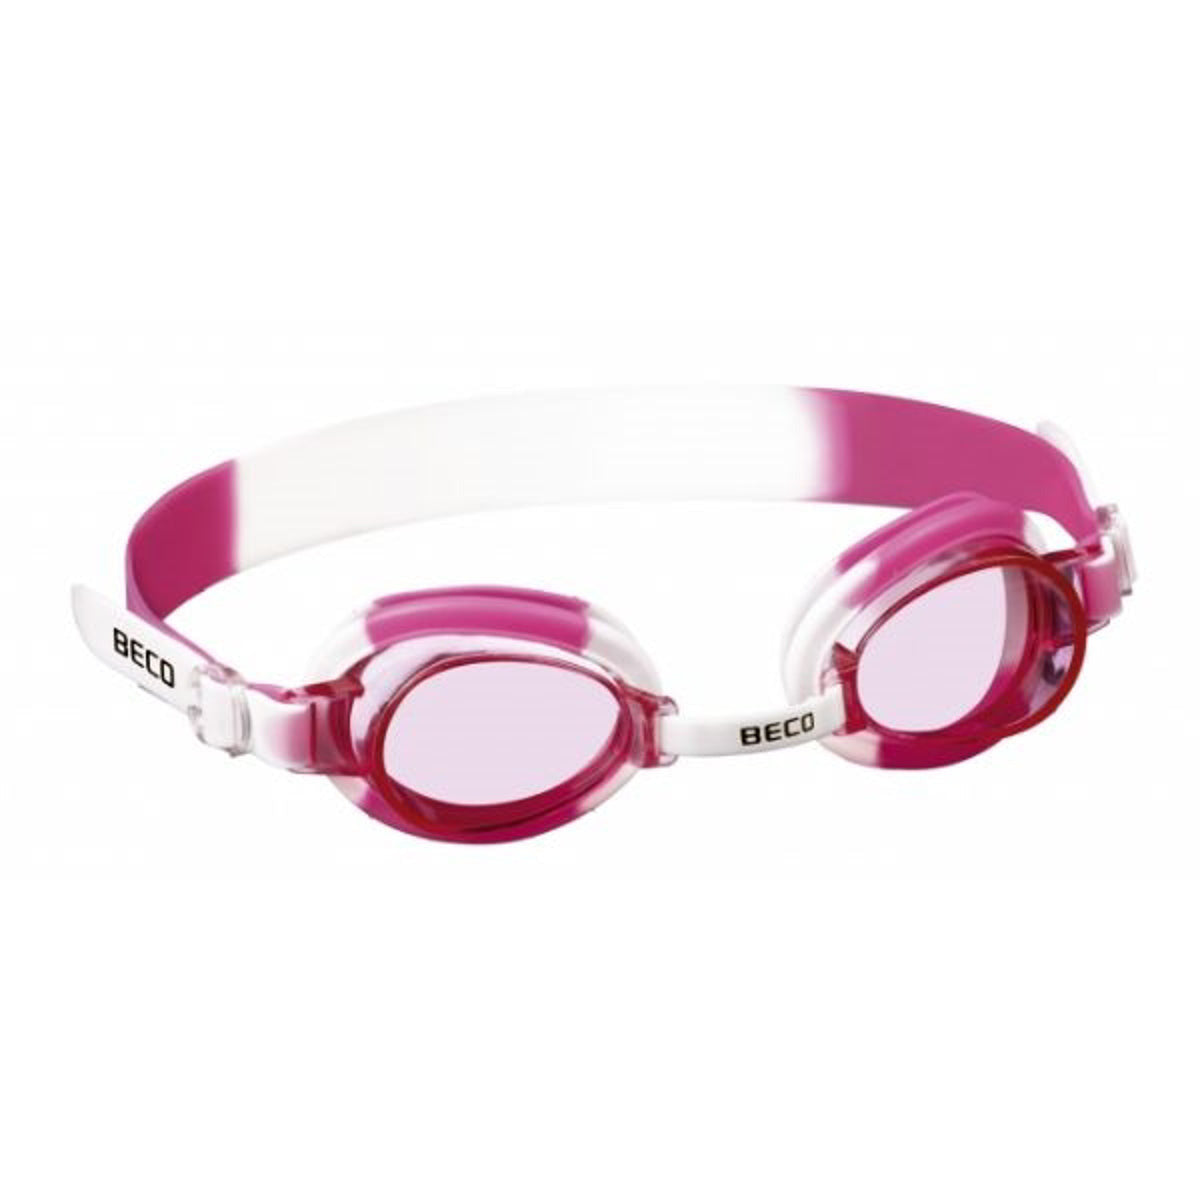 BECO "Halifax" svømmebriller til børn +8 år - Hvid/Pink